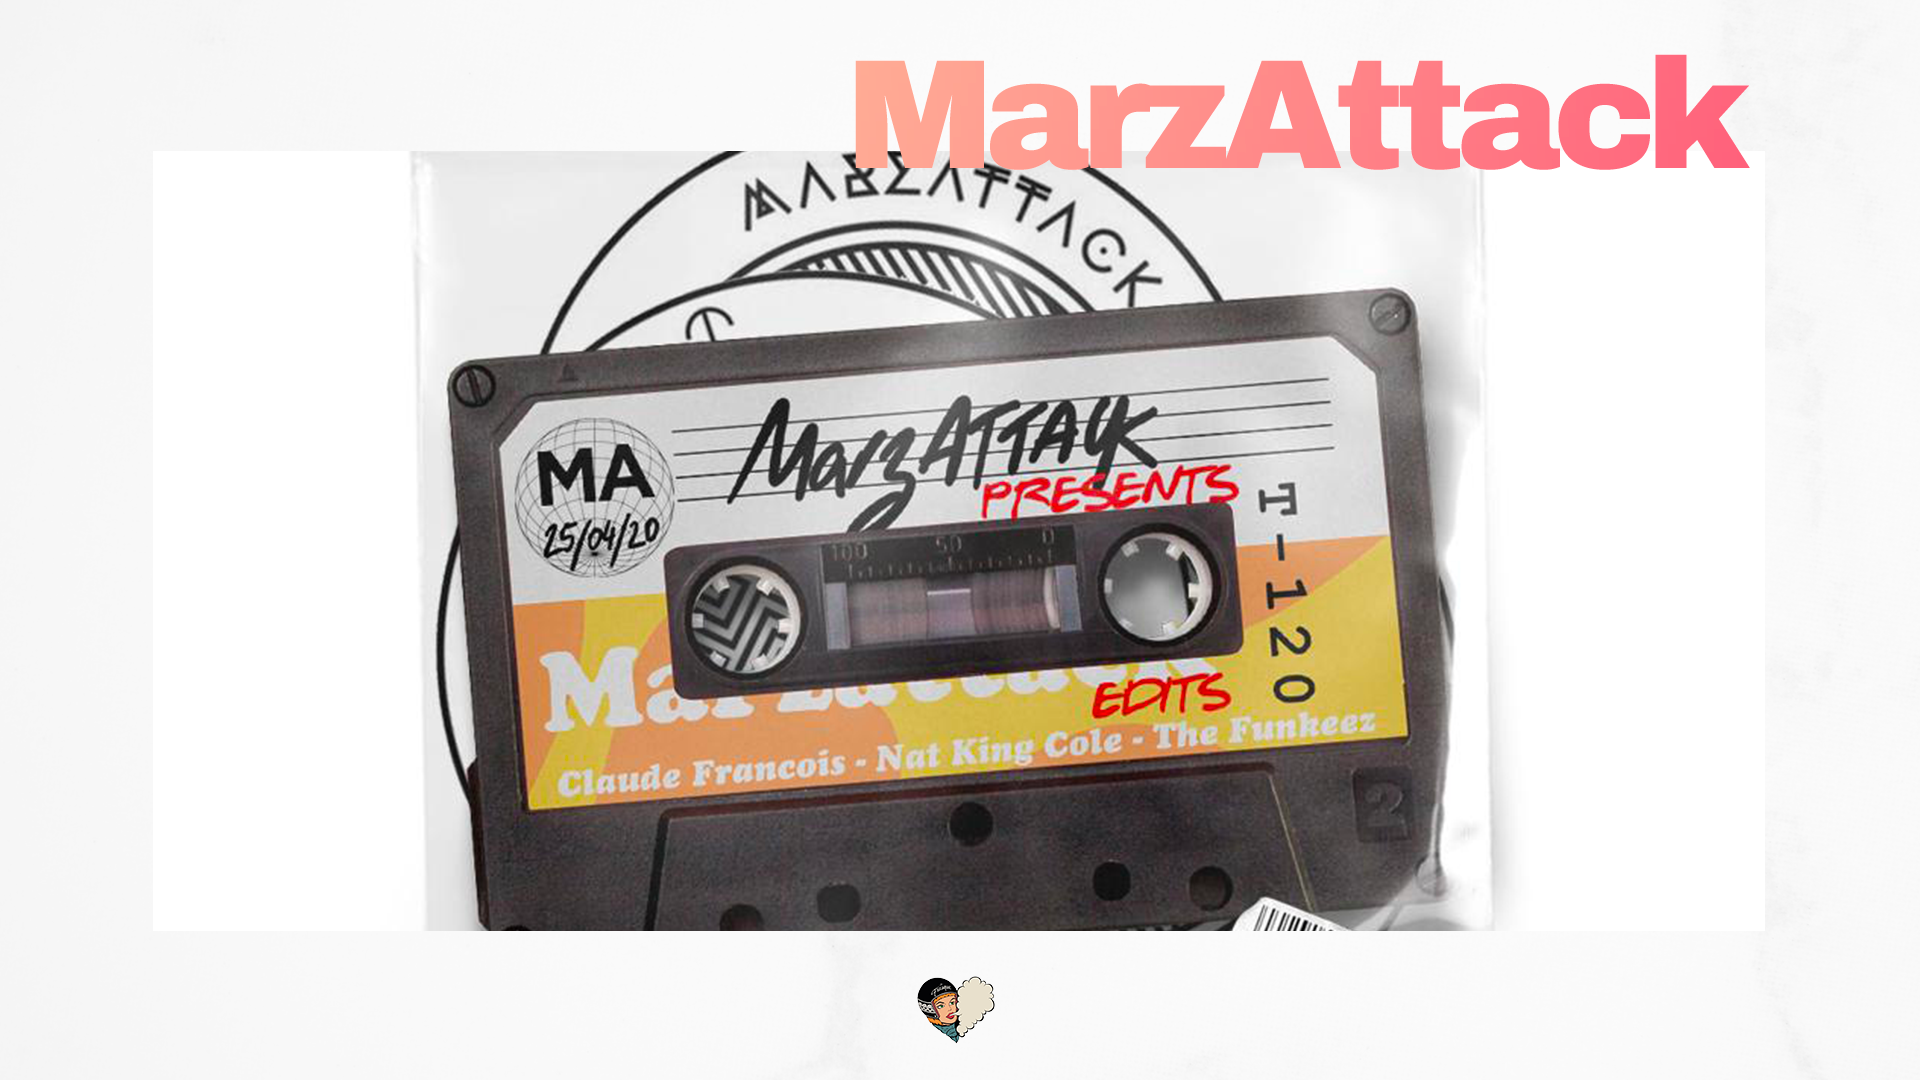 Marzattack! sort 4 nouveaux tracks